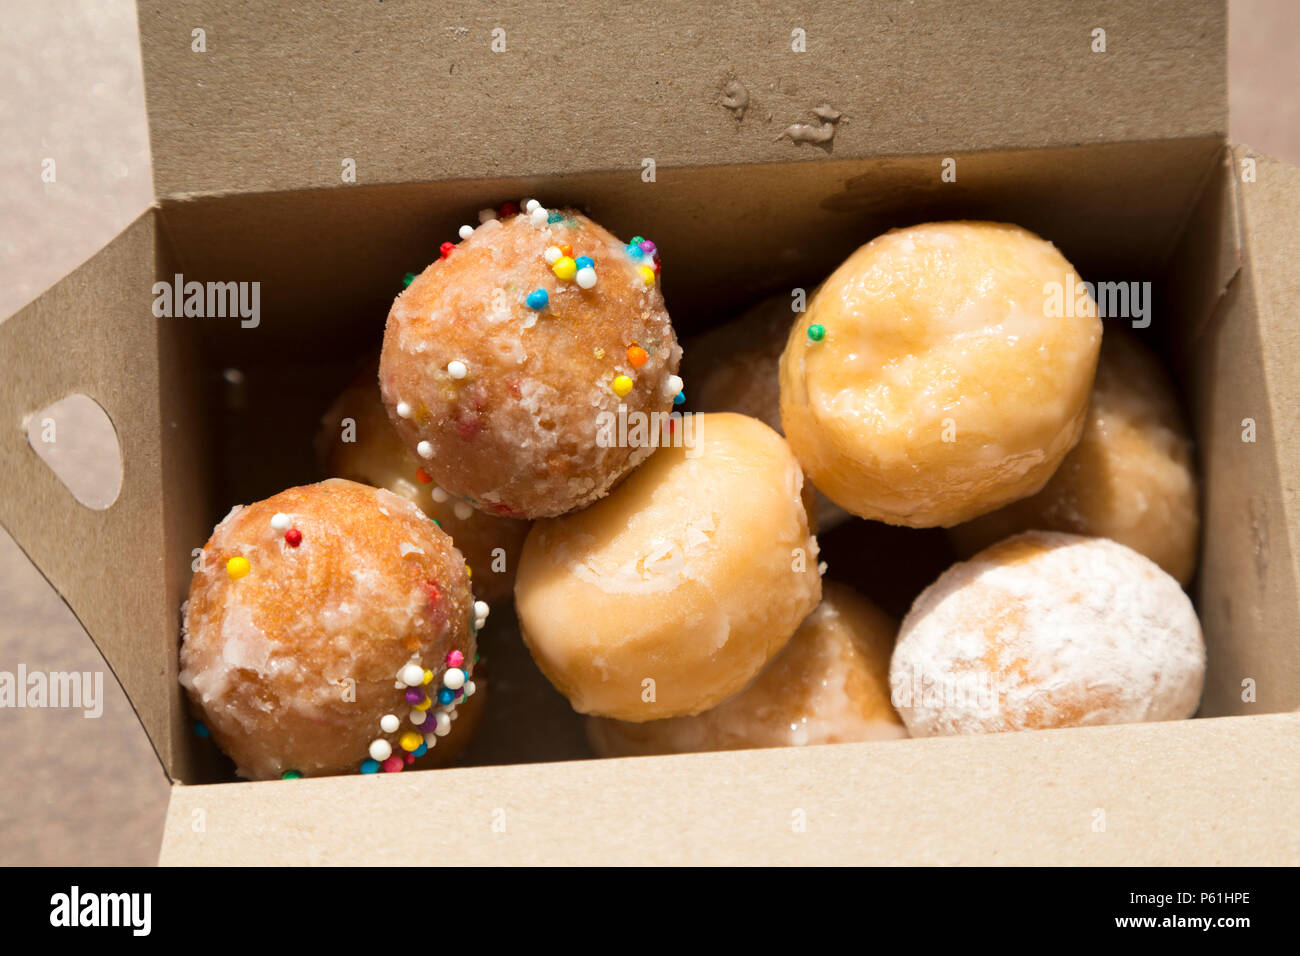 Un cuadro de Timbits servido en un Tim Hortons tienda en Canadá. Timbits son, esencialmente, con sabor a donut pedazos. Foto de stock